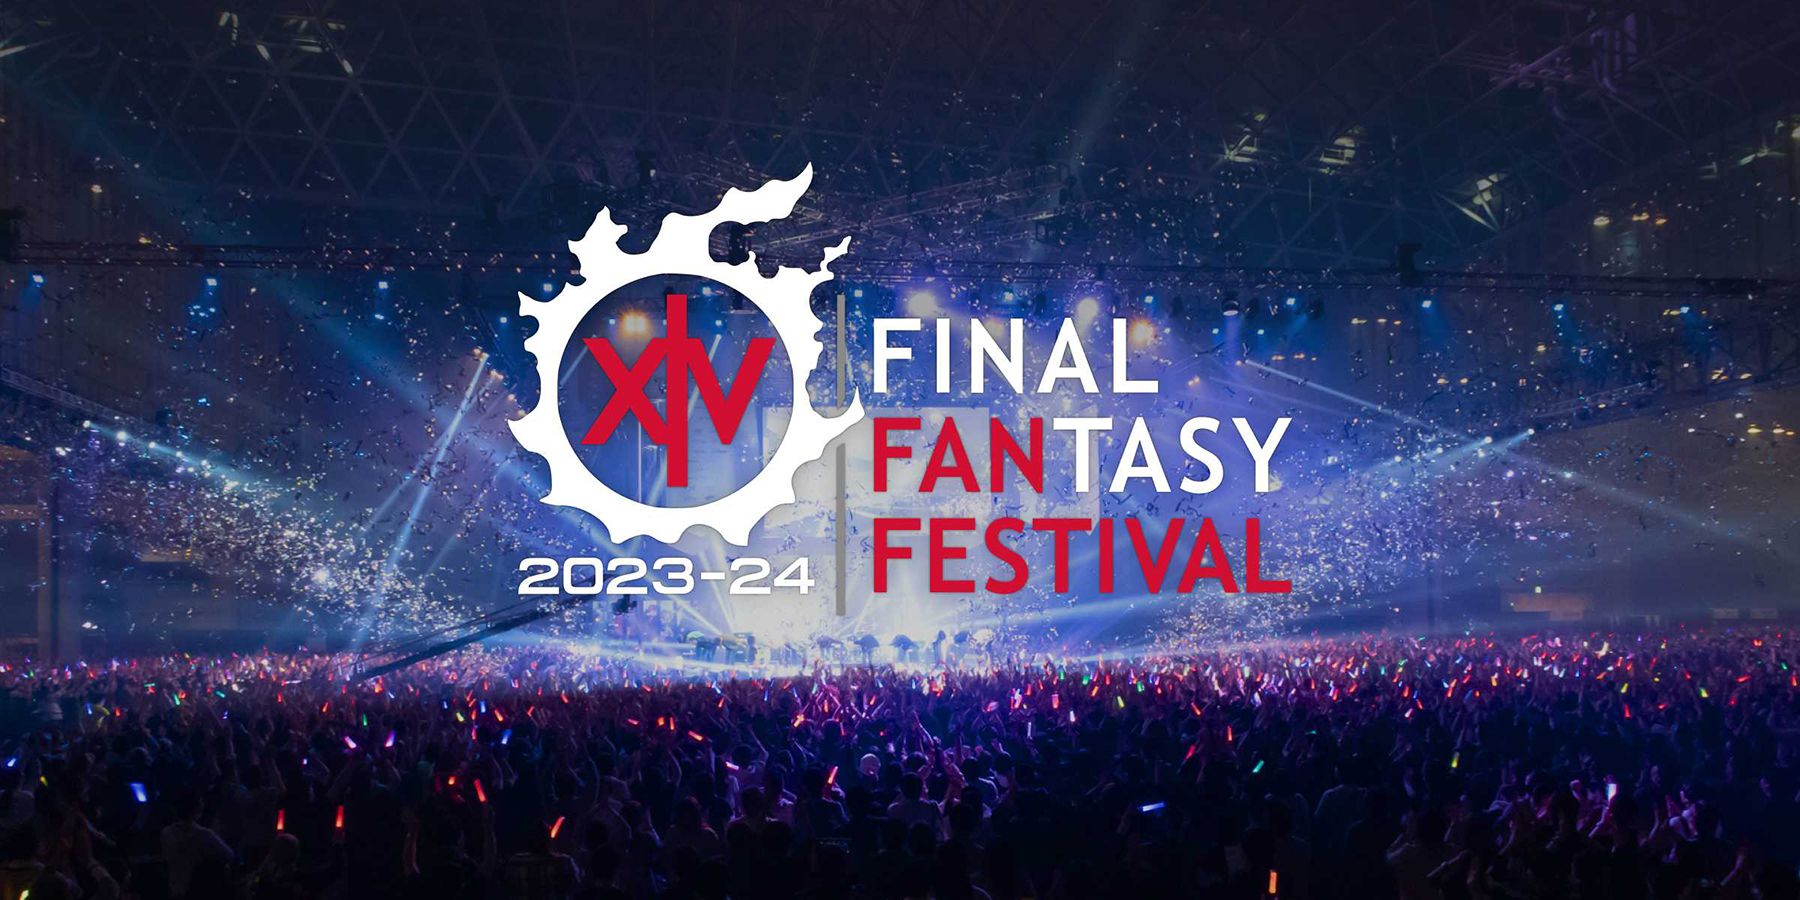 ffxiv final fantasy 14 fan fest las vegas 2023 ticket details lottery